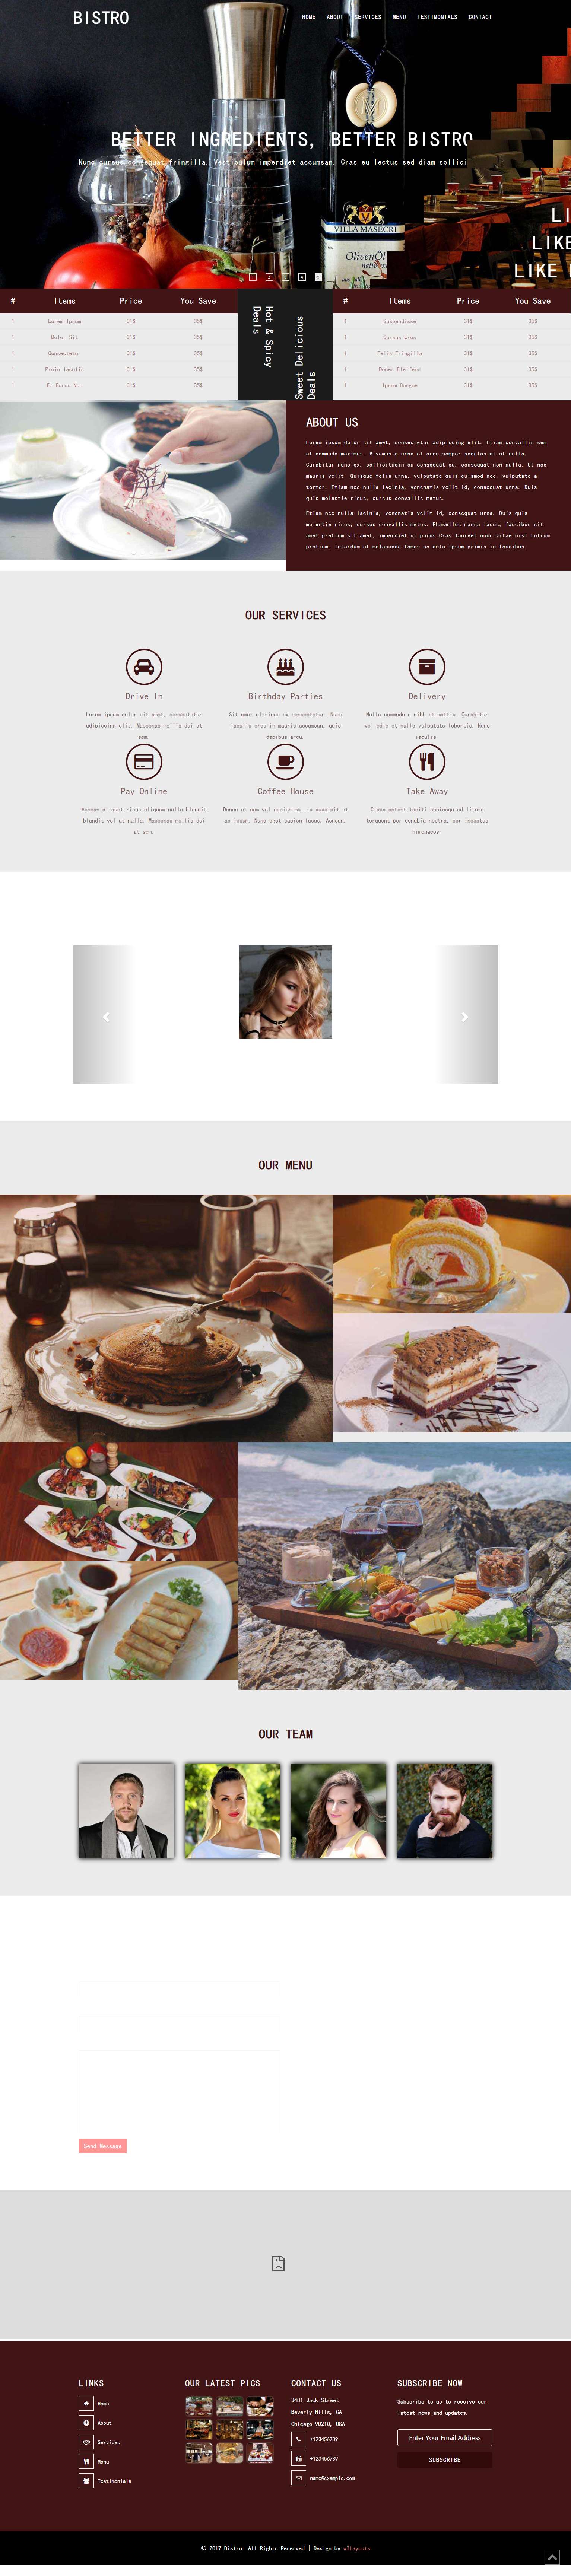 白色宽屏风格的餐厅美食定制源码下载